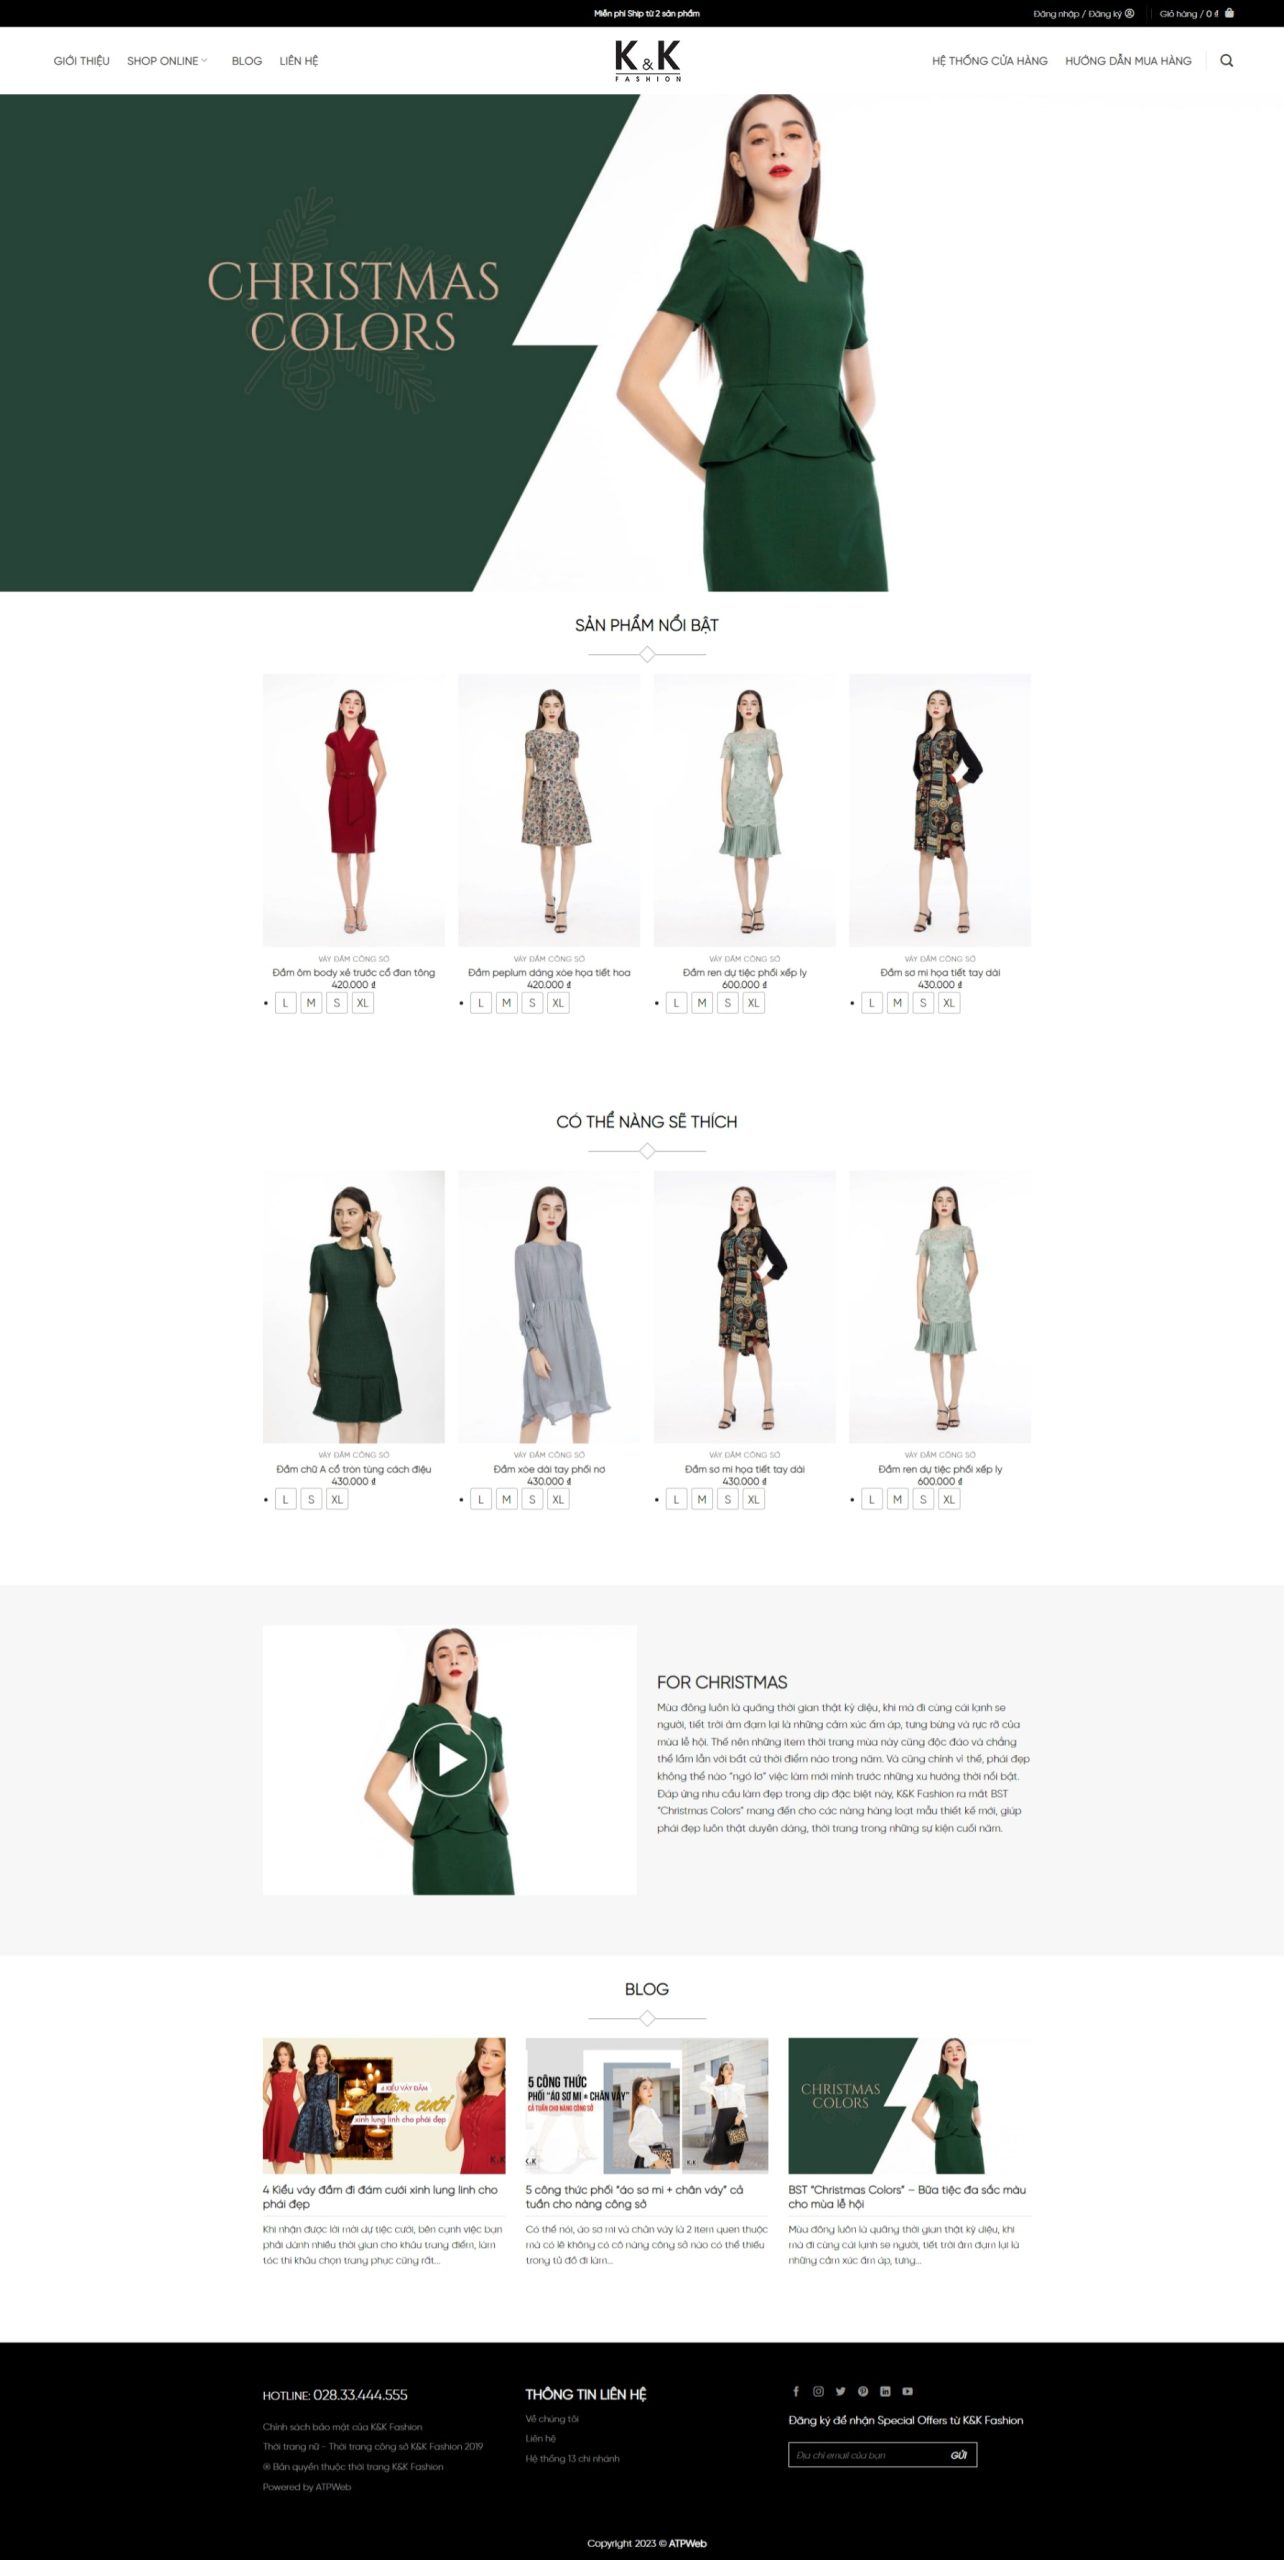 Giao diện web bán hàng quần áo, thời trang